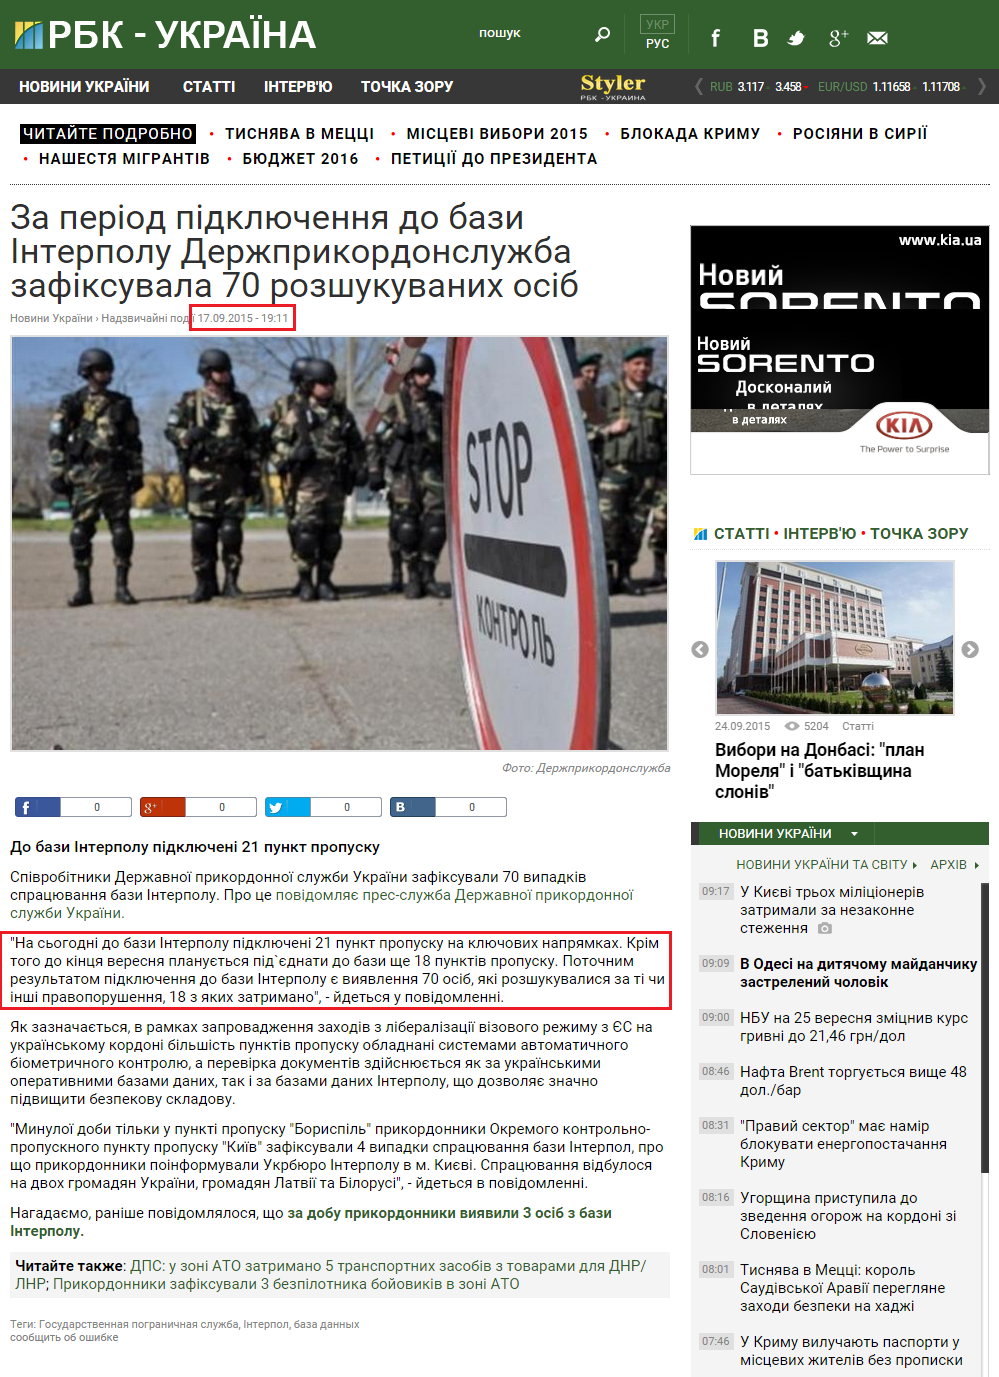 http://www.rbc.ua/ukr/news/period-podklyucheniya-baze-interpola-gospogransluzhba-1442501211.html